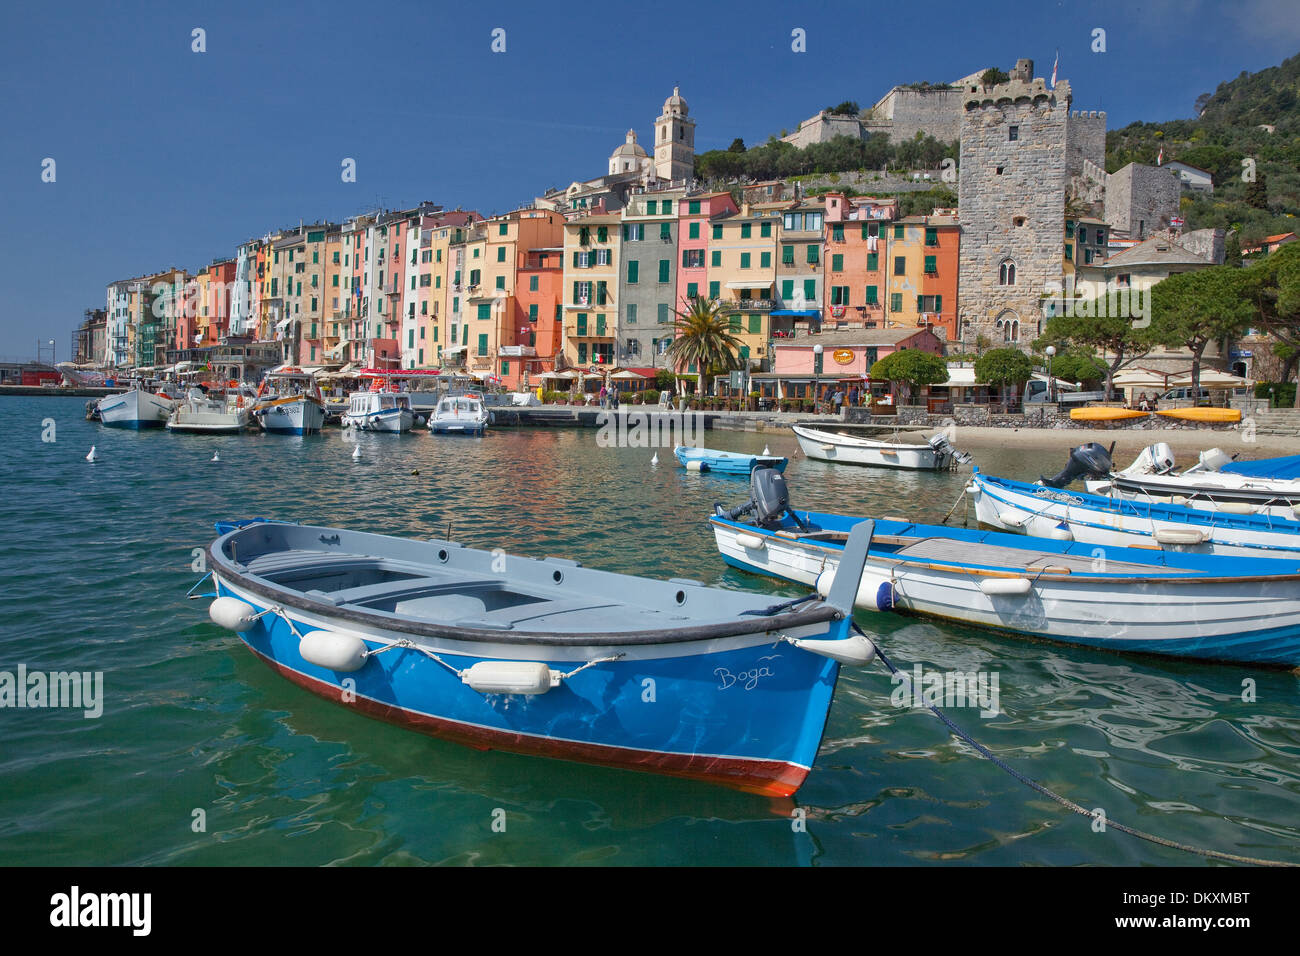 L'Europa, villaggio, sul mare Portovenere, barche, Italia, UNESCO patrimonio mondiale, costa, Cinqueterre, Mediterraneo, mare, Foto Stock